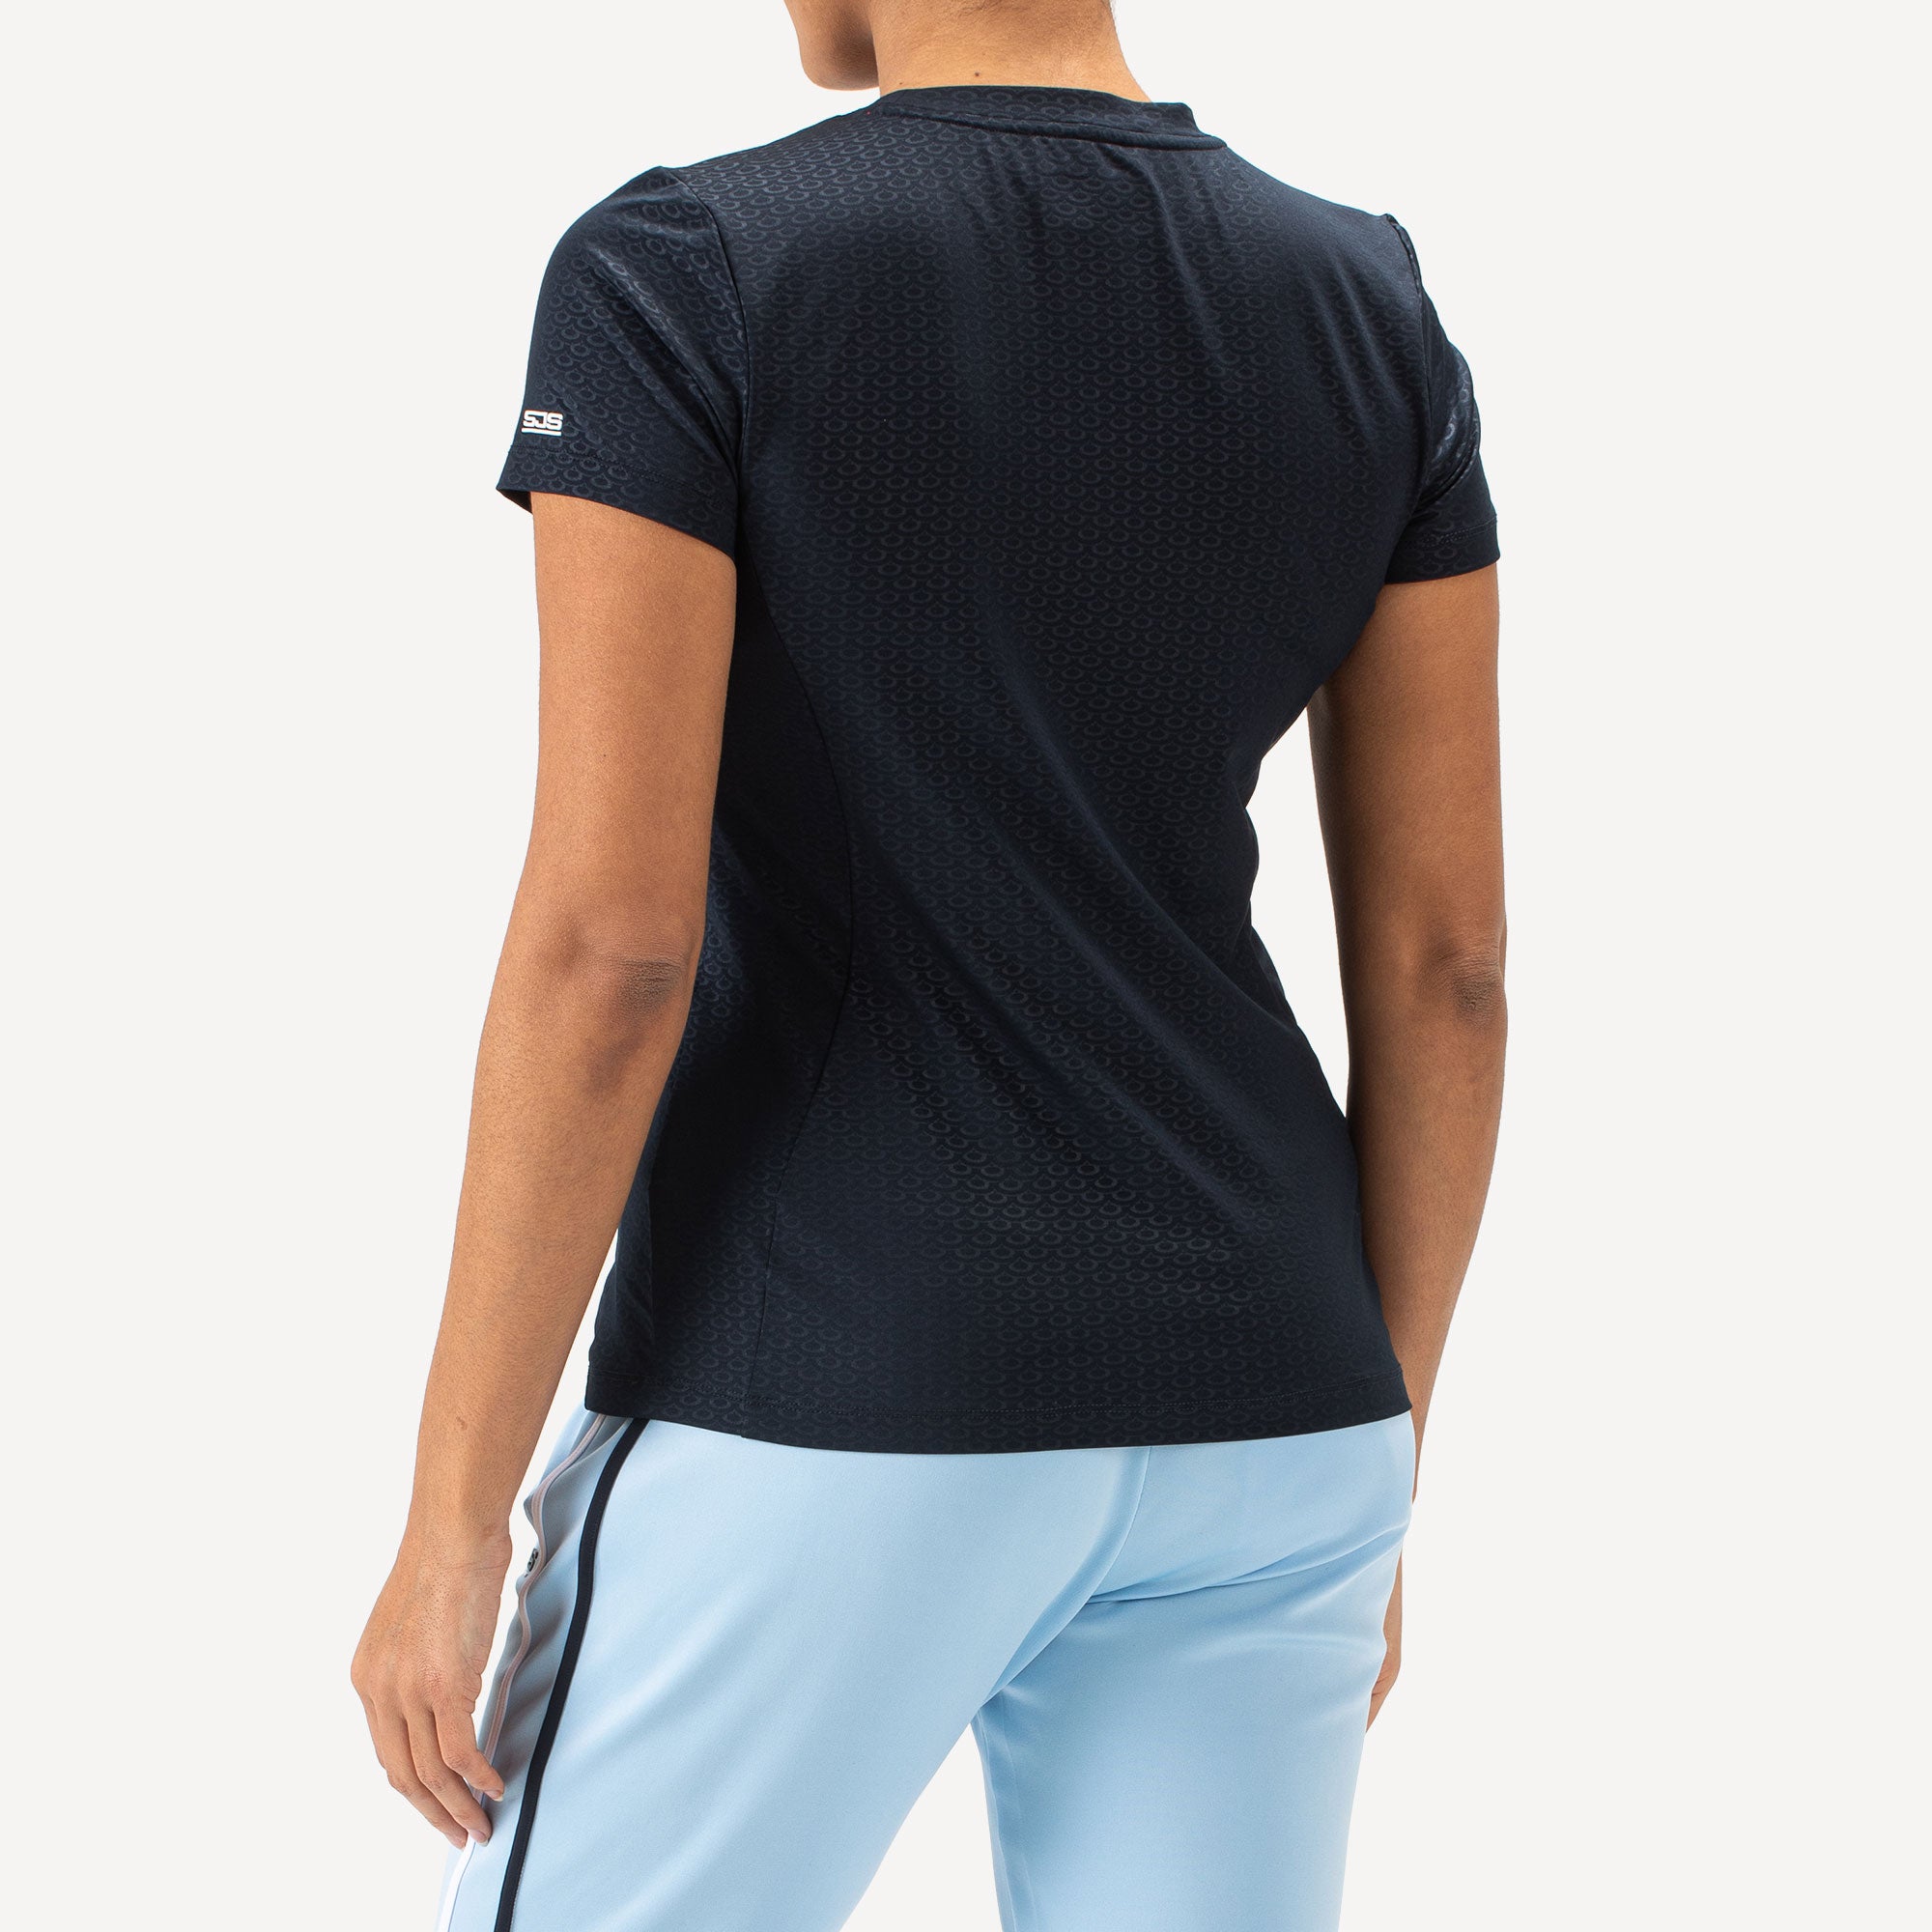 Sjeng Sports Isabeau Women's Tennis Shirt - Dark Blue (2)